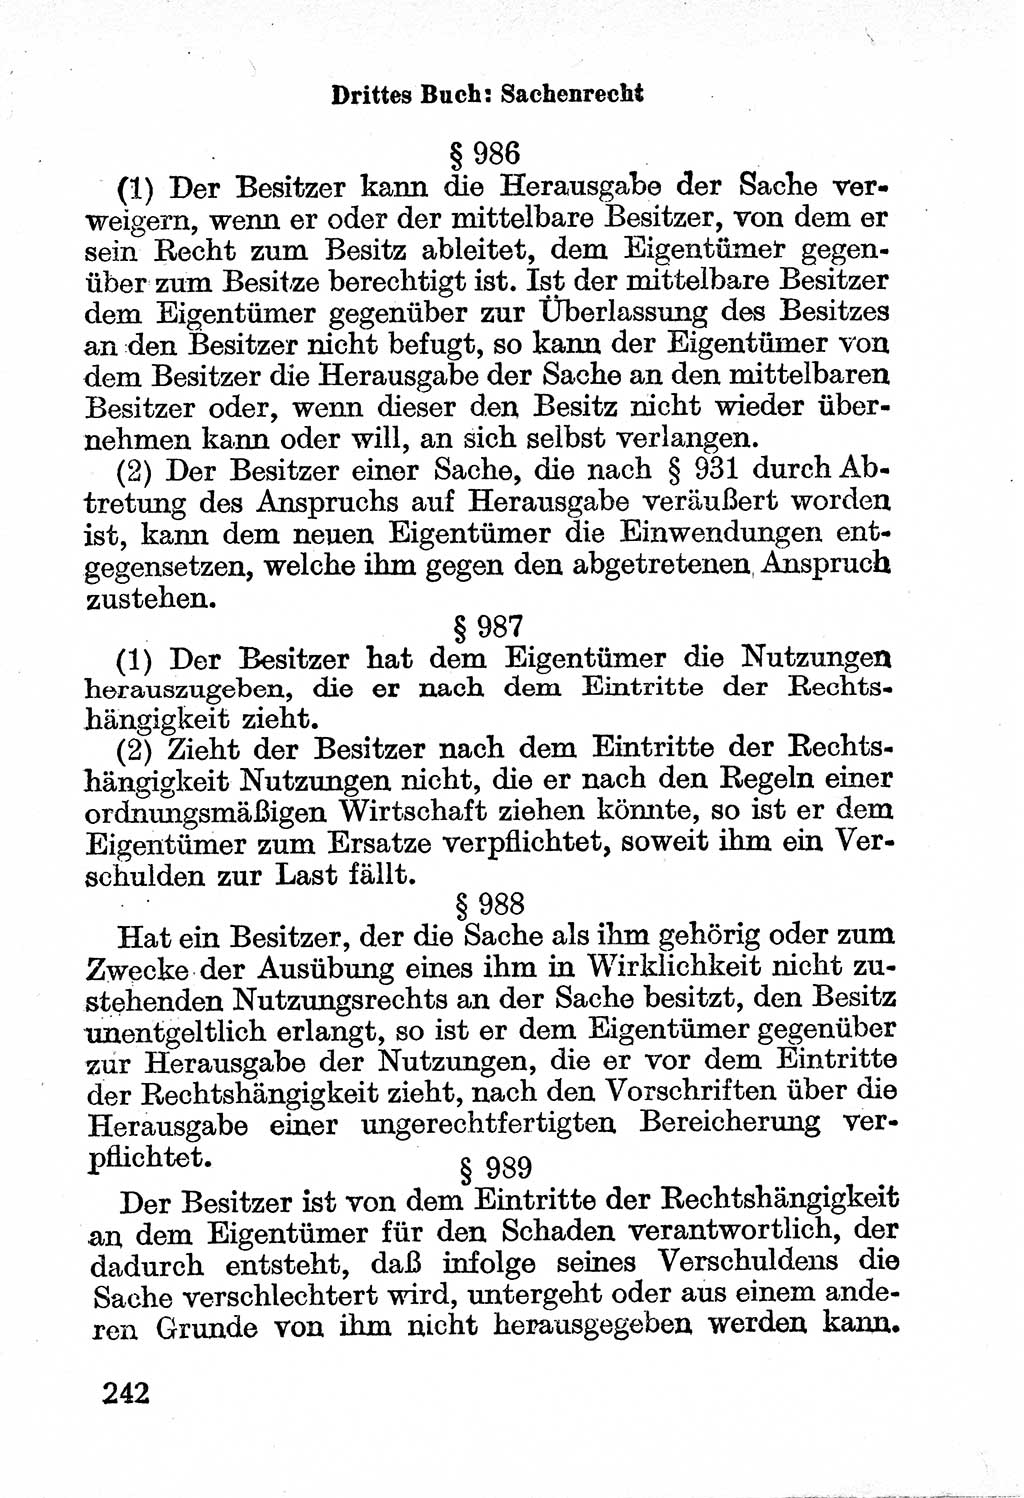 Bürgerliches Gesetzbuch (BGB) nebst wichtigen Nebengesetzen [Deutsche Demokratische Republik (DDR)] 1956, Seite 242 (BGB Nebenges. DDR 1956, S. 242)